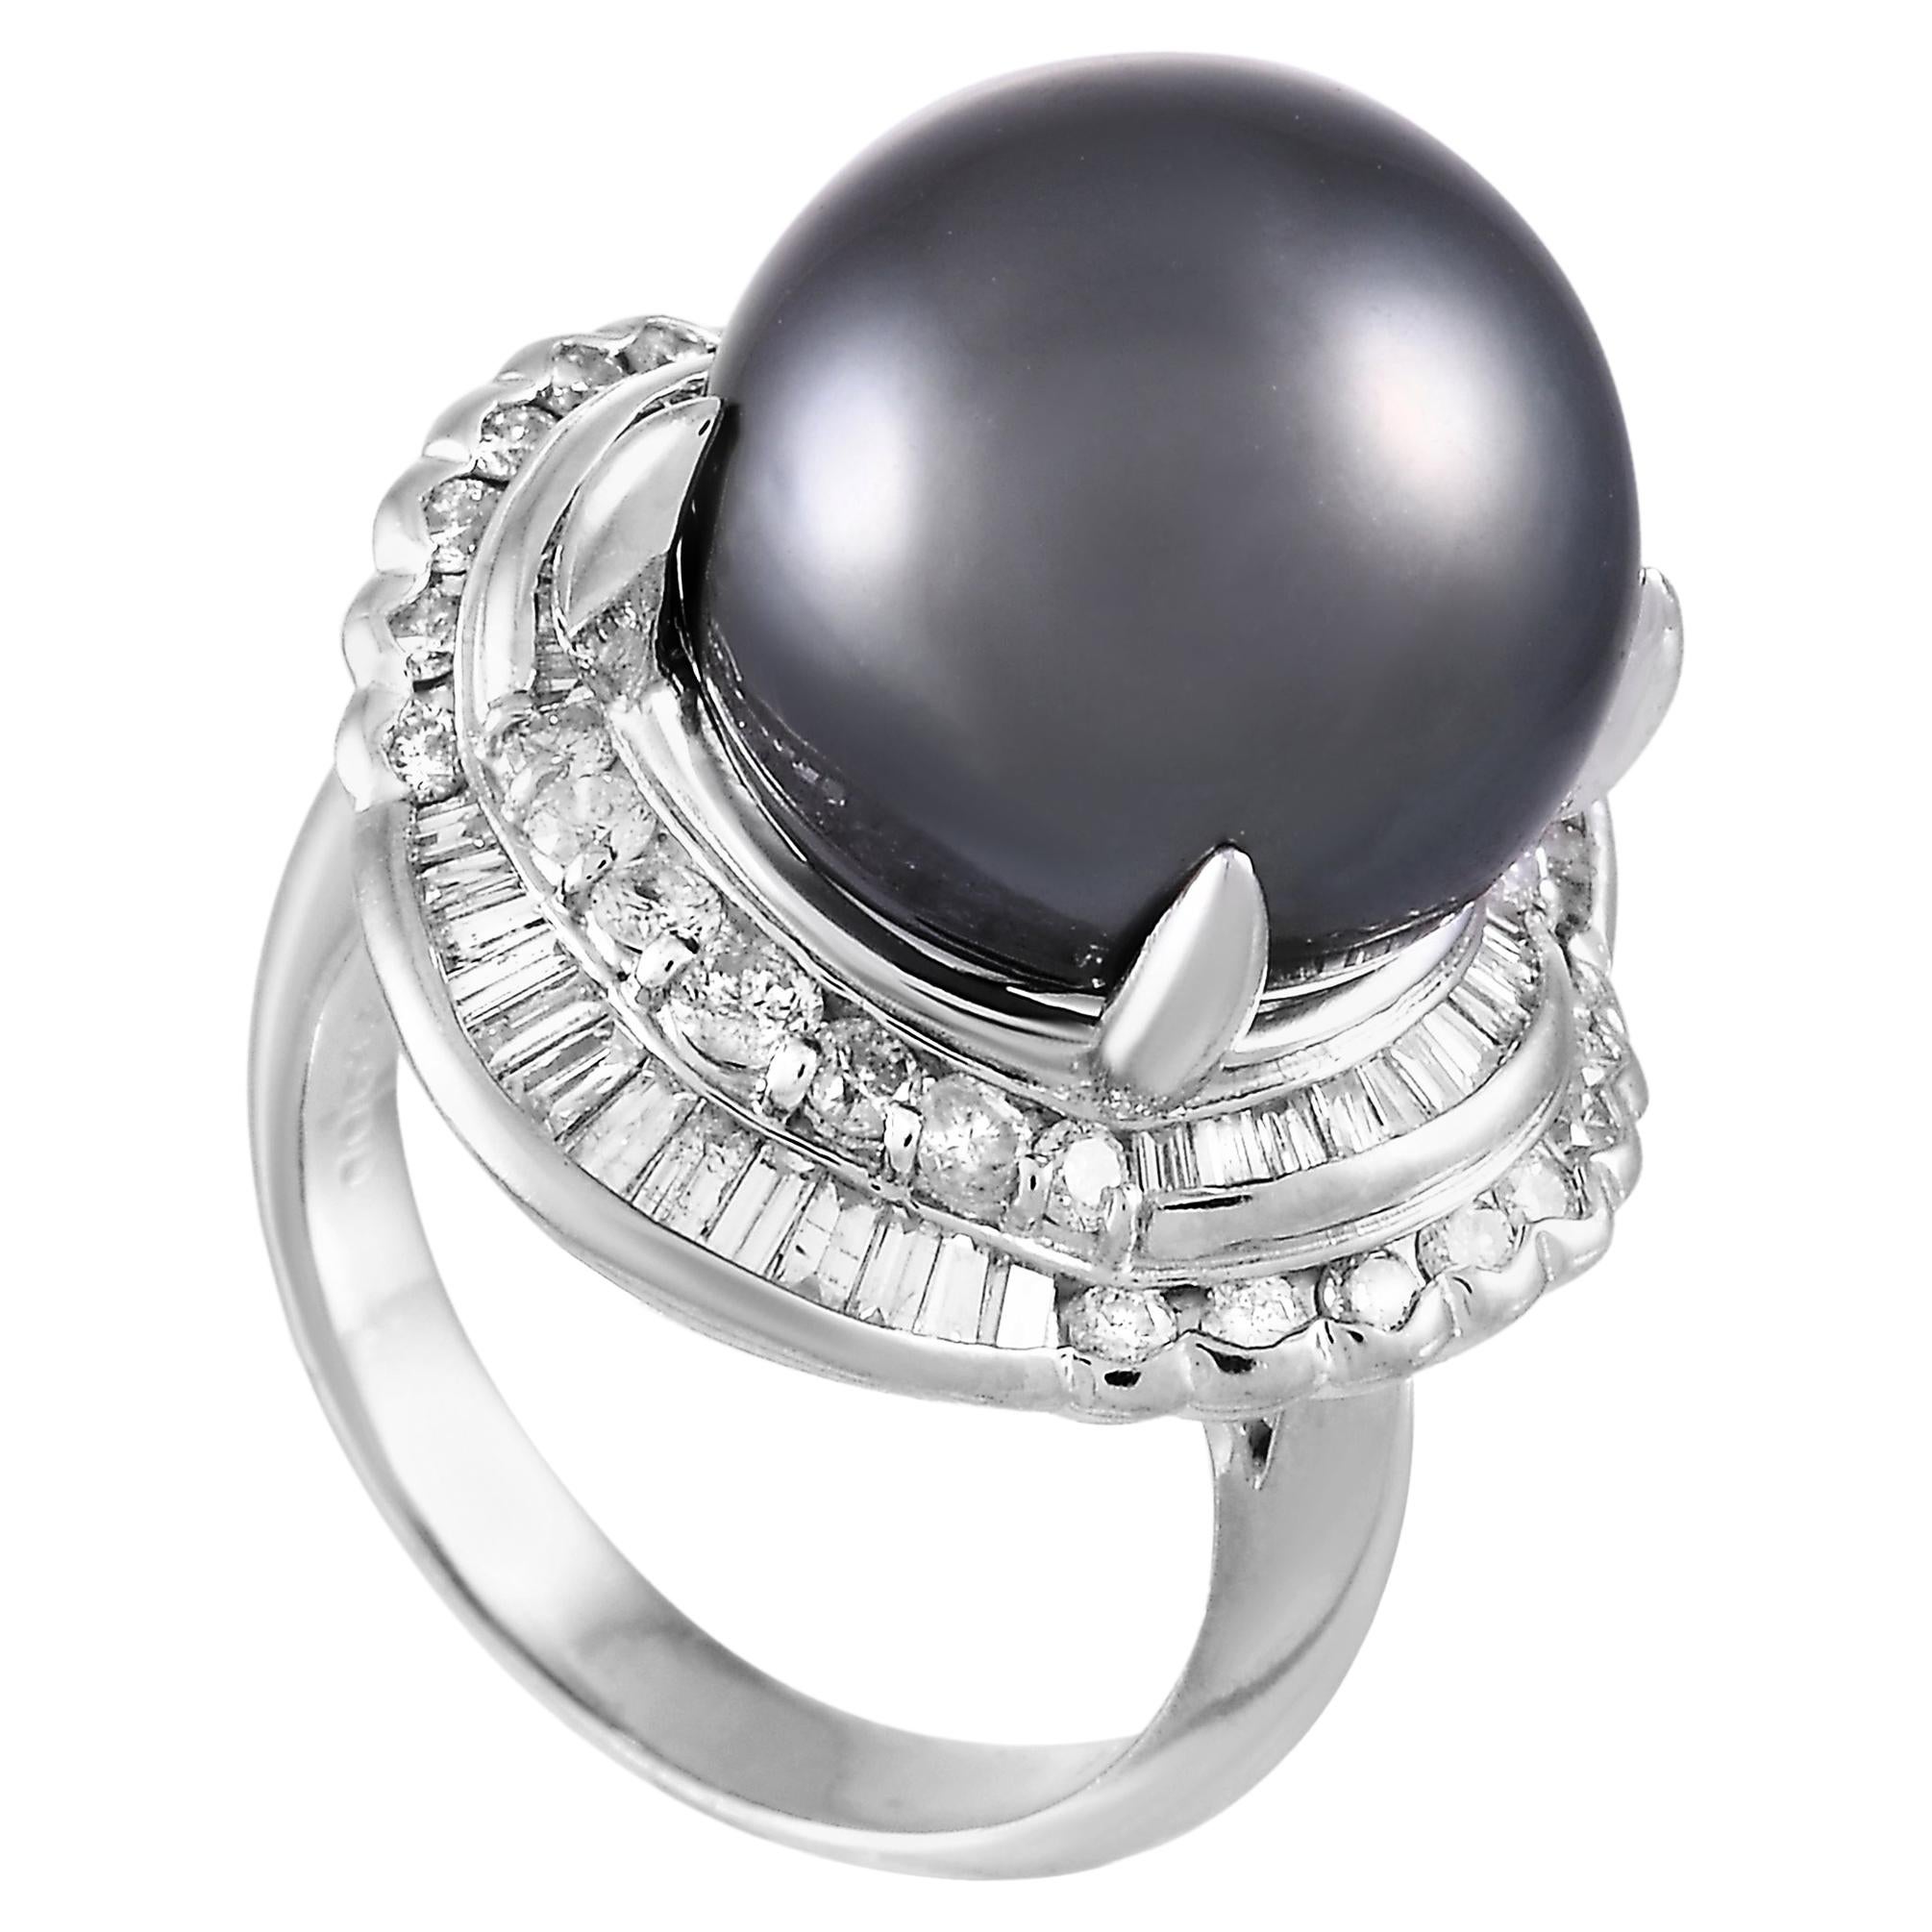 LB Exclusive Platinum 1.44 Carat Diamond and Pearl Ring